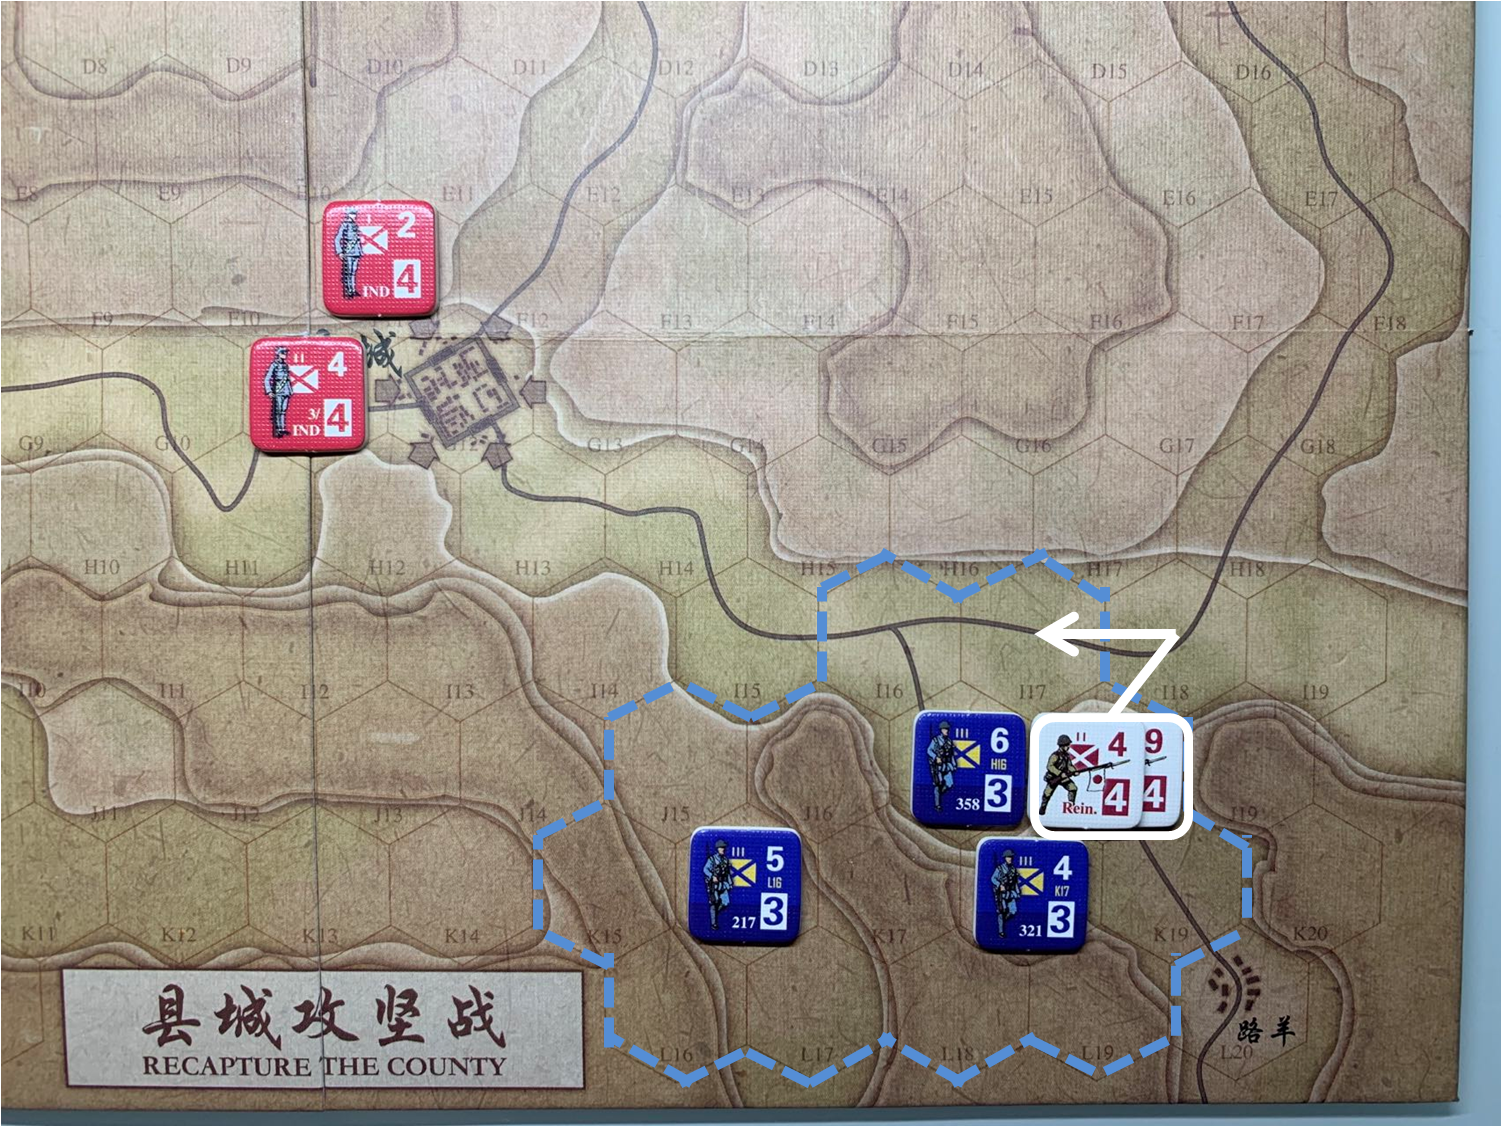 第二回合路羊方向日军增援部队（J18）对于移动命令3的执行计划